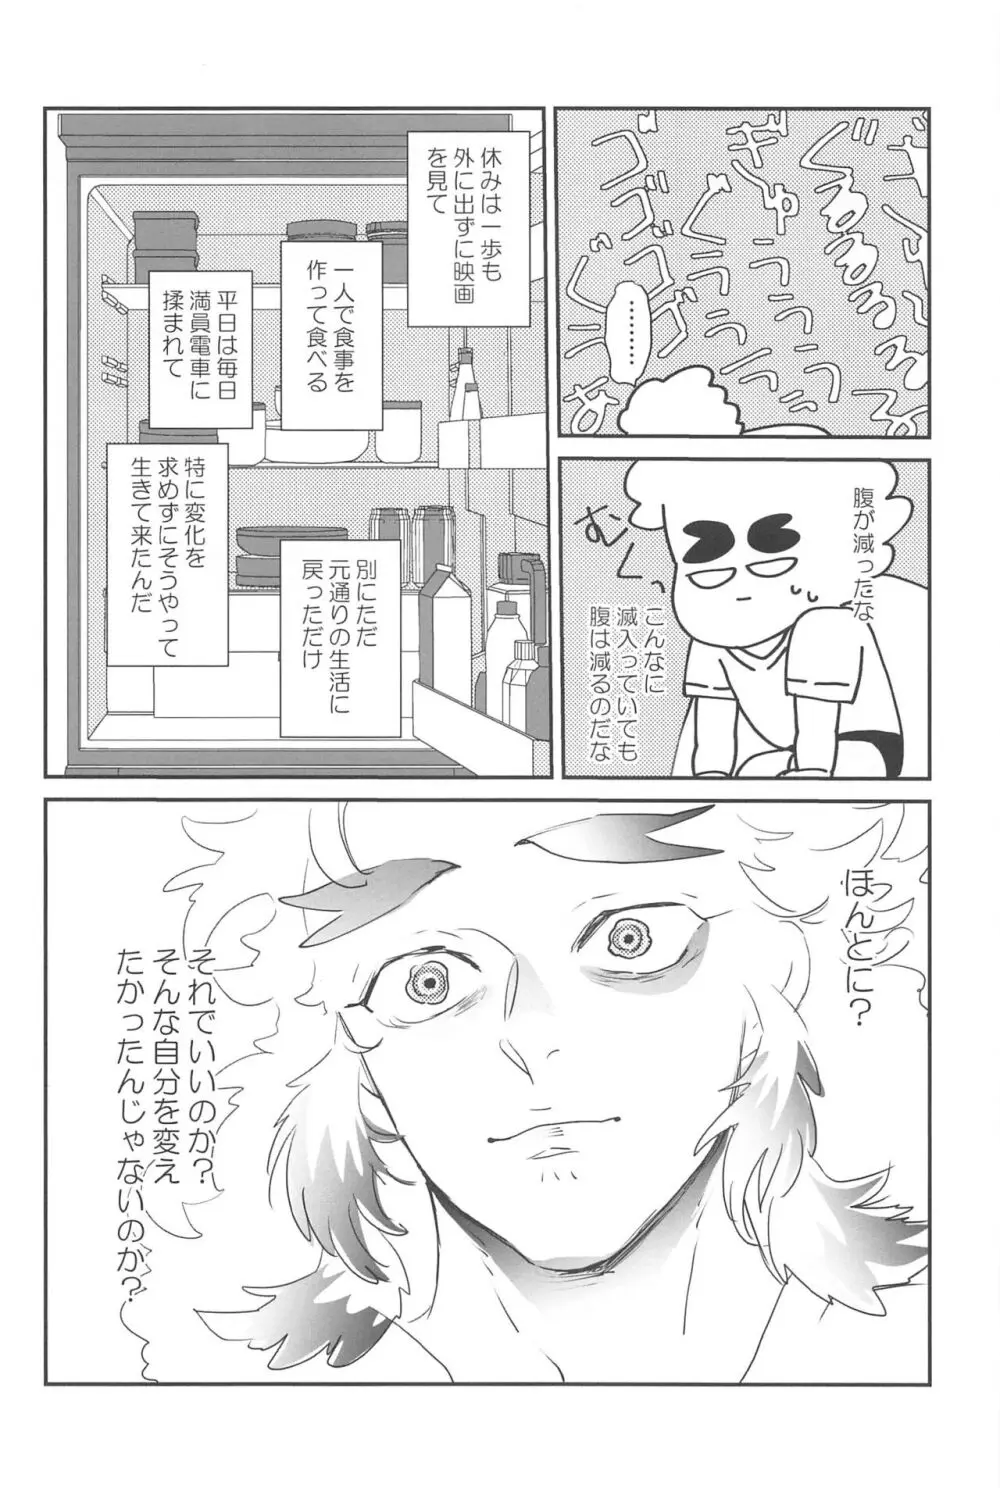 待ってくれ恋愛初心者なんだ! - page37